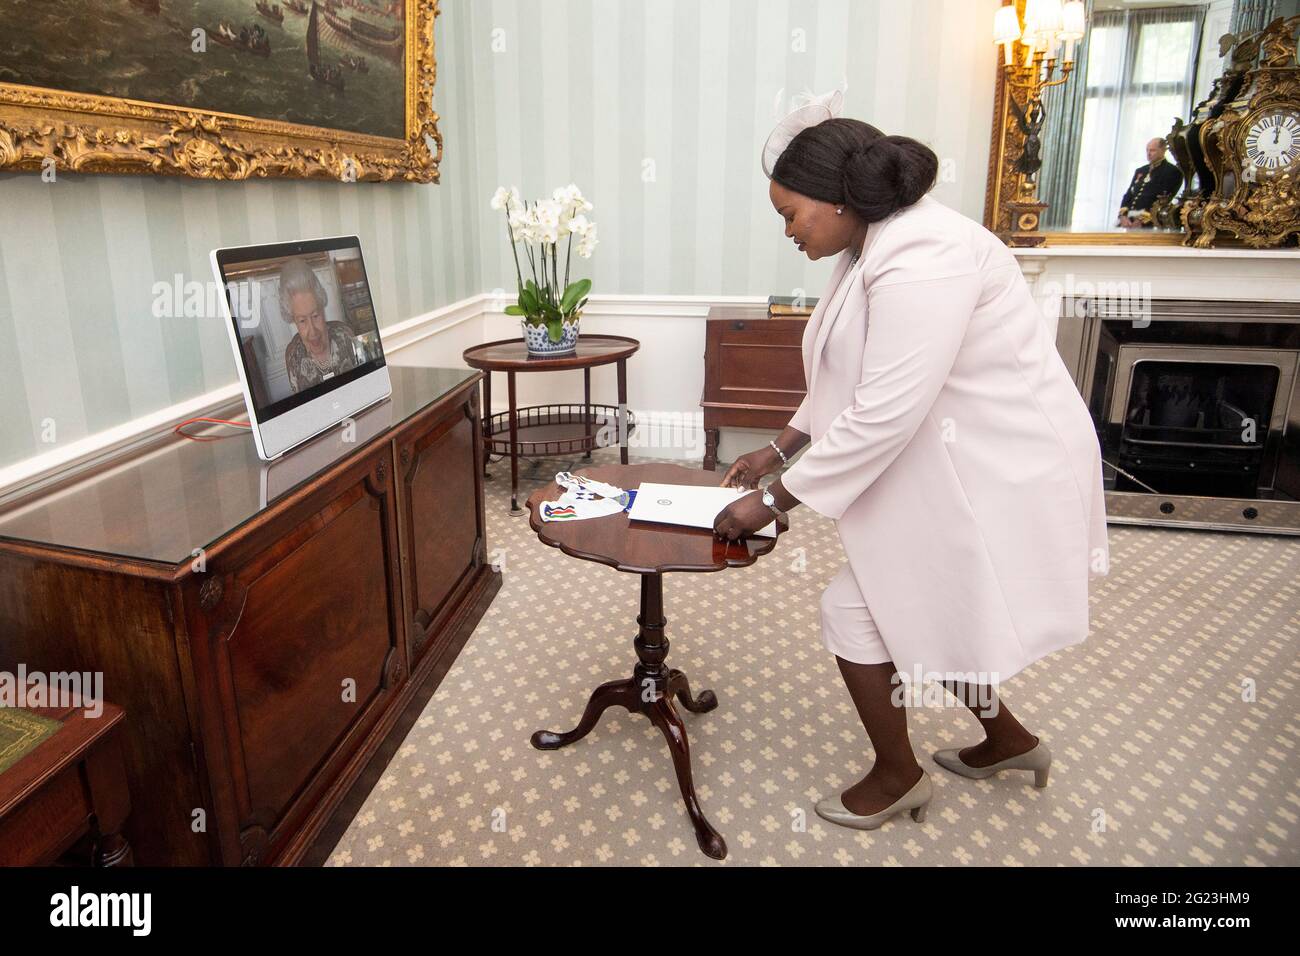 La regina Elisabetta II appare su uno schermo via video dal Castello di Windsor, dove è in residenza, durante un pubblico virtuale per ricevere l'Ambasciatore della Repubblica del Sud Sudan, Agnes Oswaha, a Buckingham Palace, Londra. Data immagine: Martedì 8 giugno 2021. Foto Stock